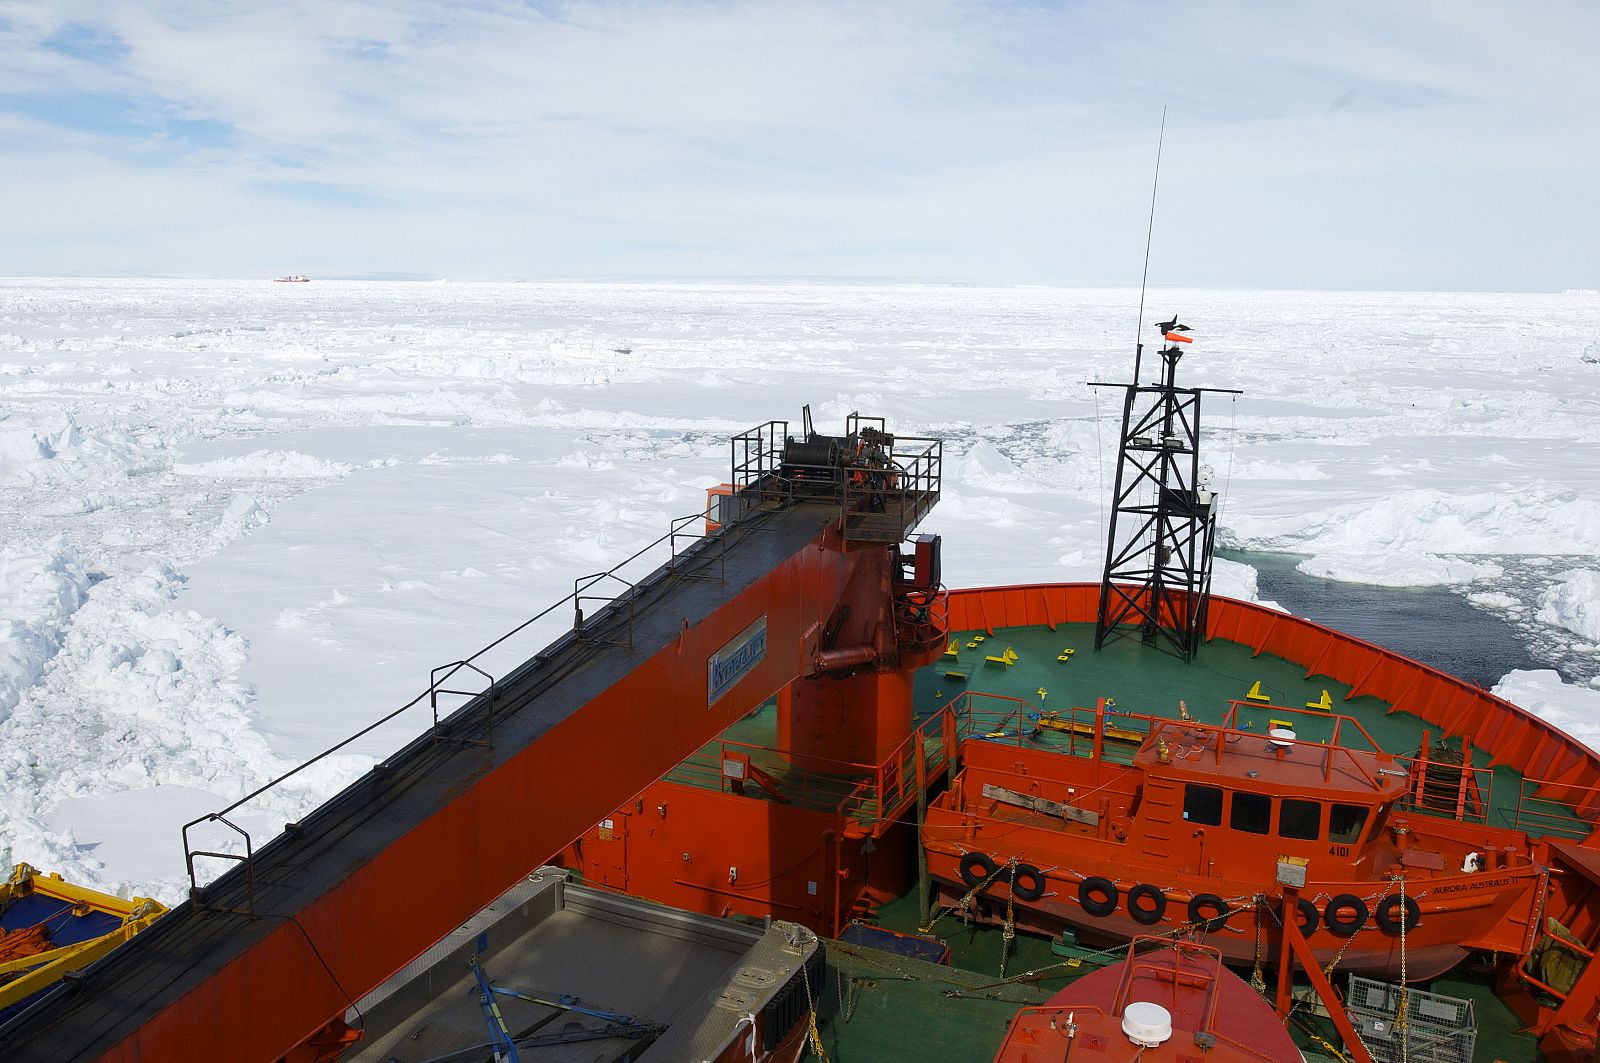 El rompehielo chino Xue Long (Dragón de la nieve), a la izquierda, visto desde la nave del Aurora Australis en su intento por llegar este jueves al barco ruso atrapado en la Antártida.